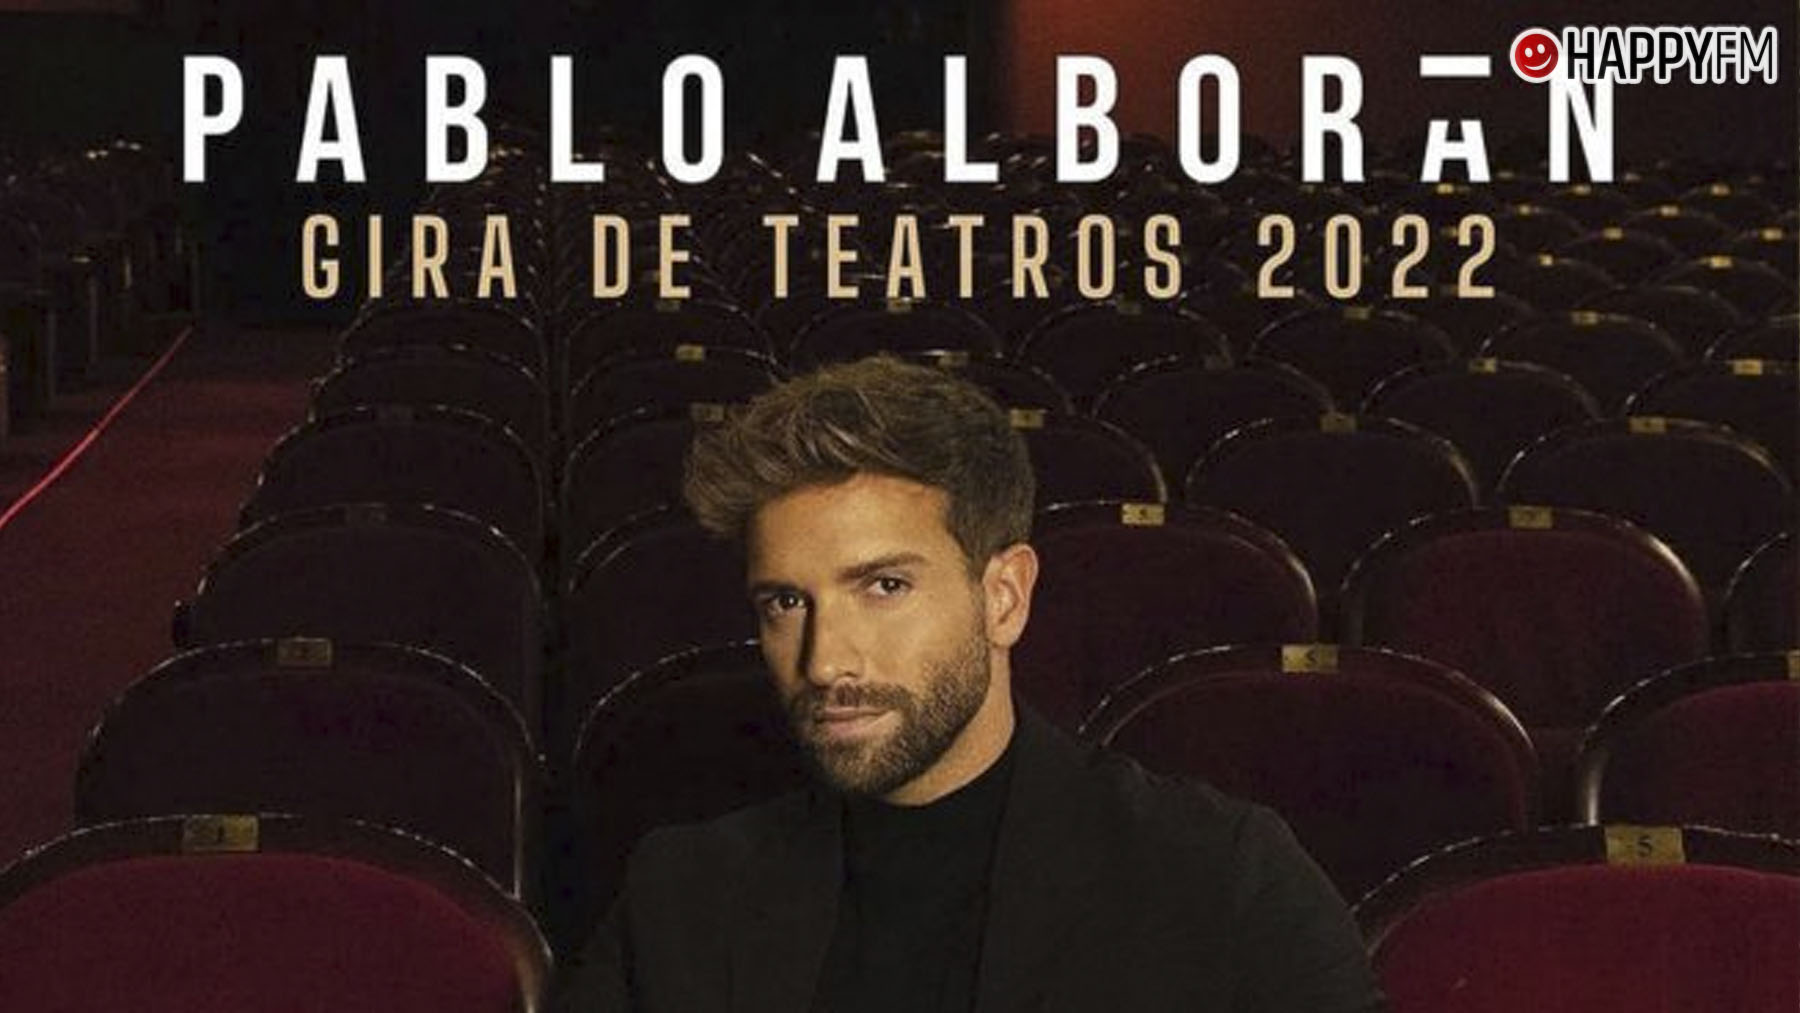 Pablo López nos habla de su relación con Pablo Alborán: ¿habrá  colaboración?, Música